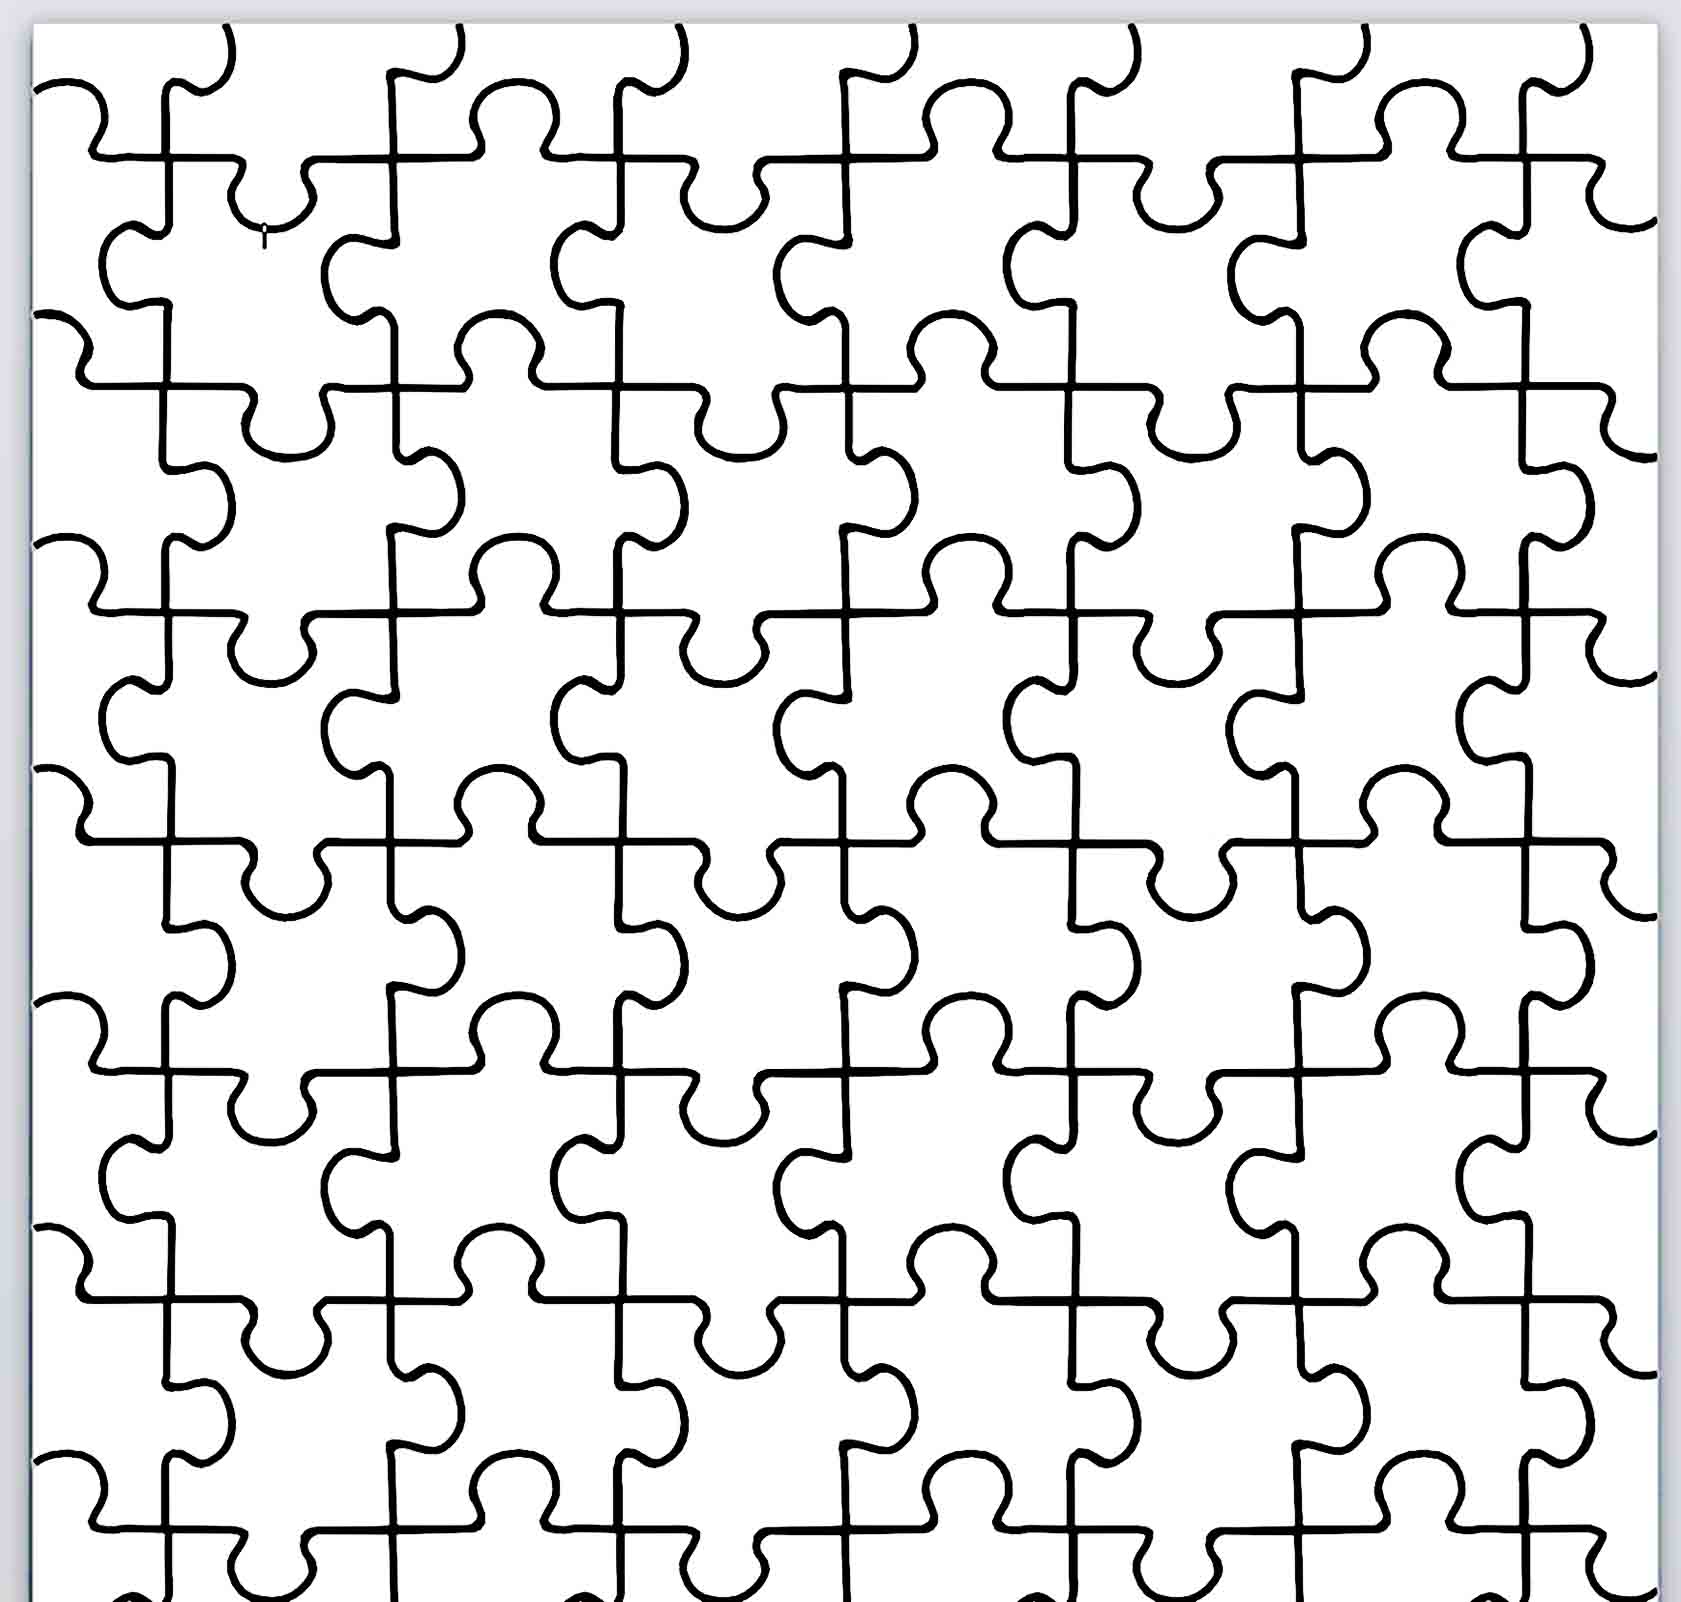 puzzle piece template 04